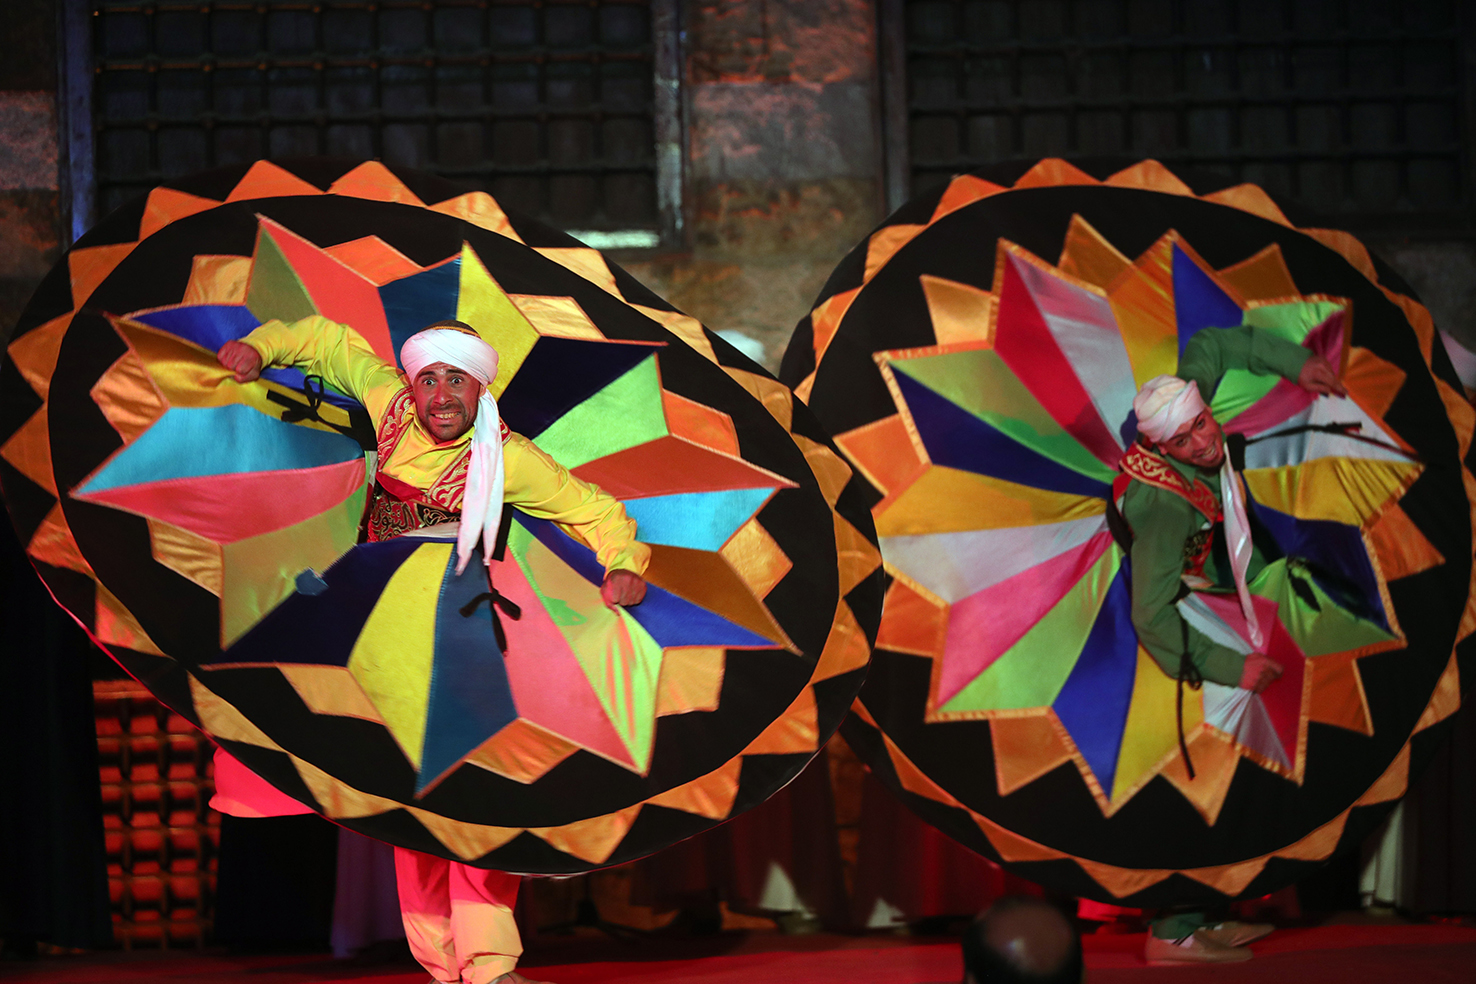 大裙舞随乐声旋转－－3月20日，舞者在埃及开罗的固丽宫表演大裙舞。大裙舞是埃及民间传统舞蹈，舞者身着艳丽服装，随乐声旋转舞动。（新华社）